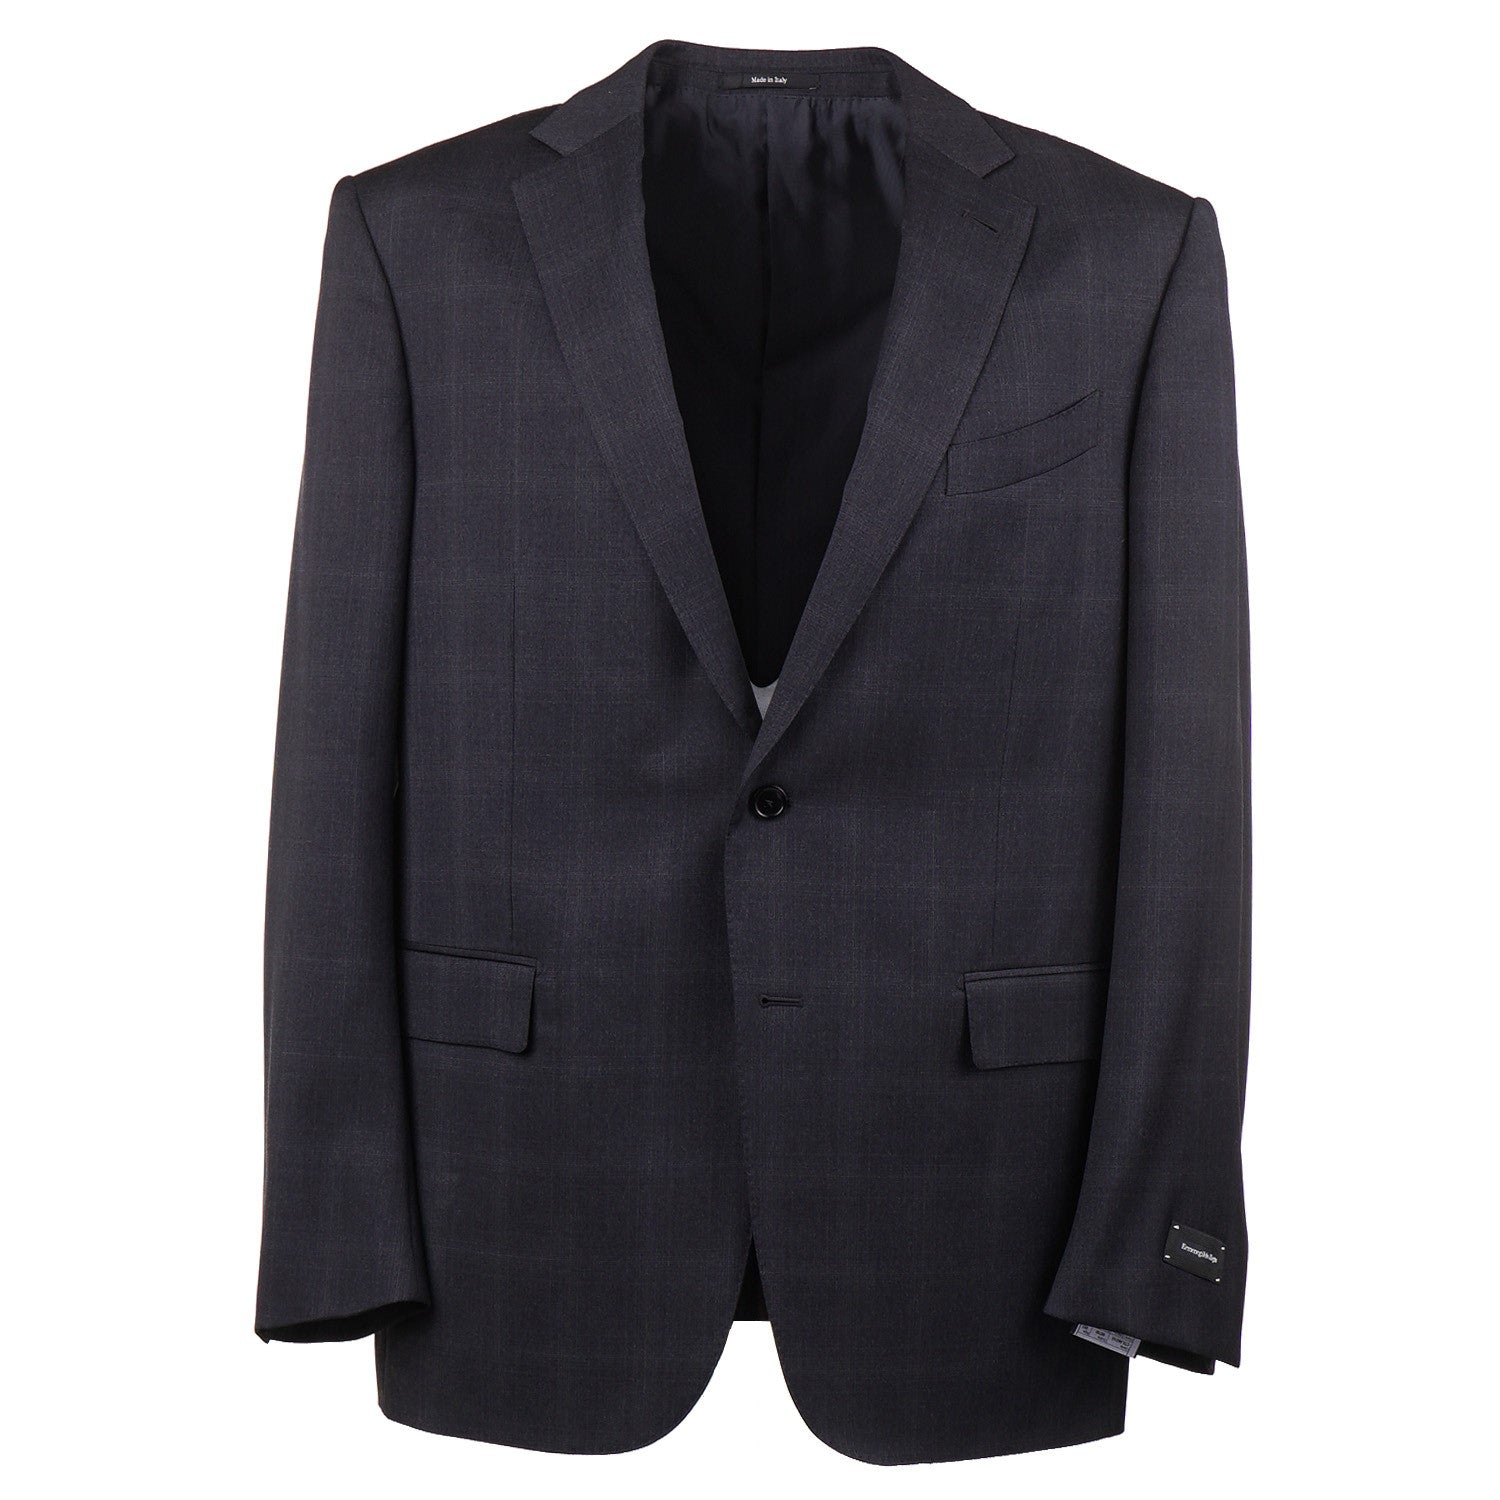 Ermenegildo Zegna 'Multiseason' Wool Suit – Top Shelf Apparel